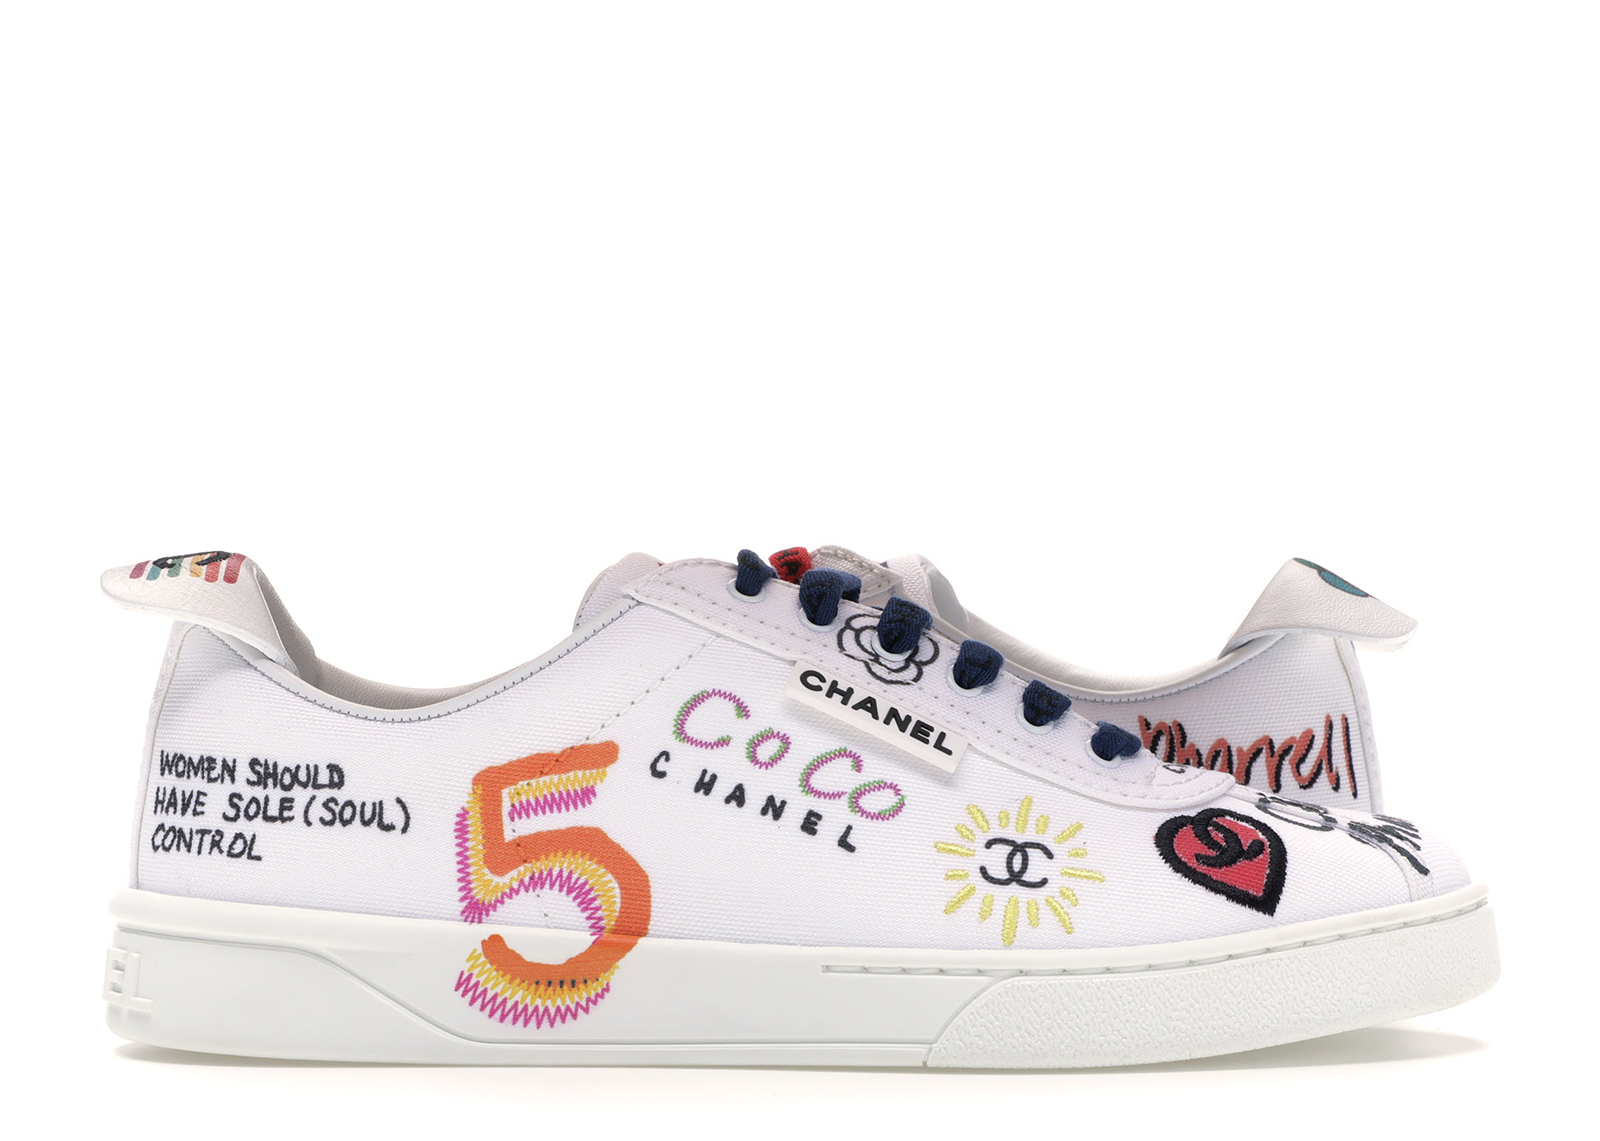 Chanel Sneakers Pharrell White Multi-Color (Women's)